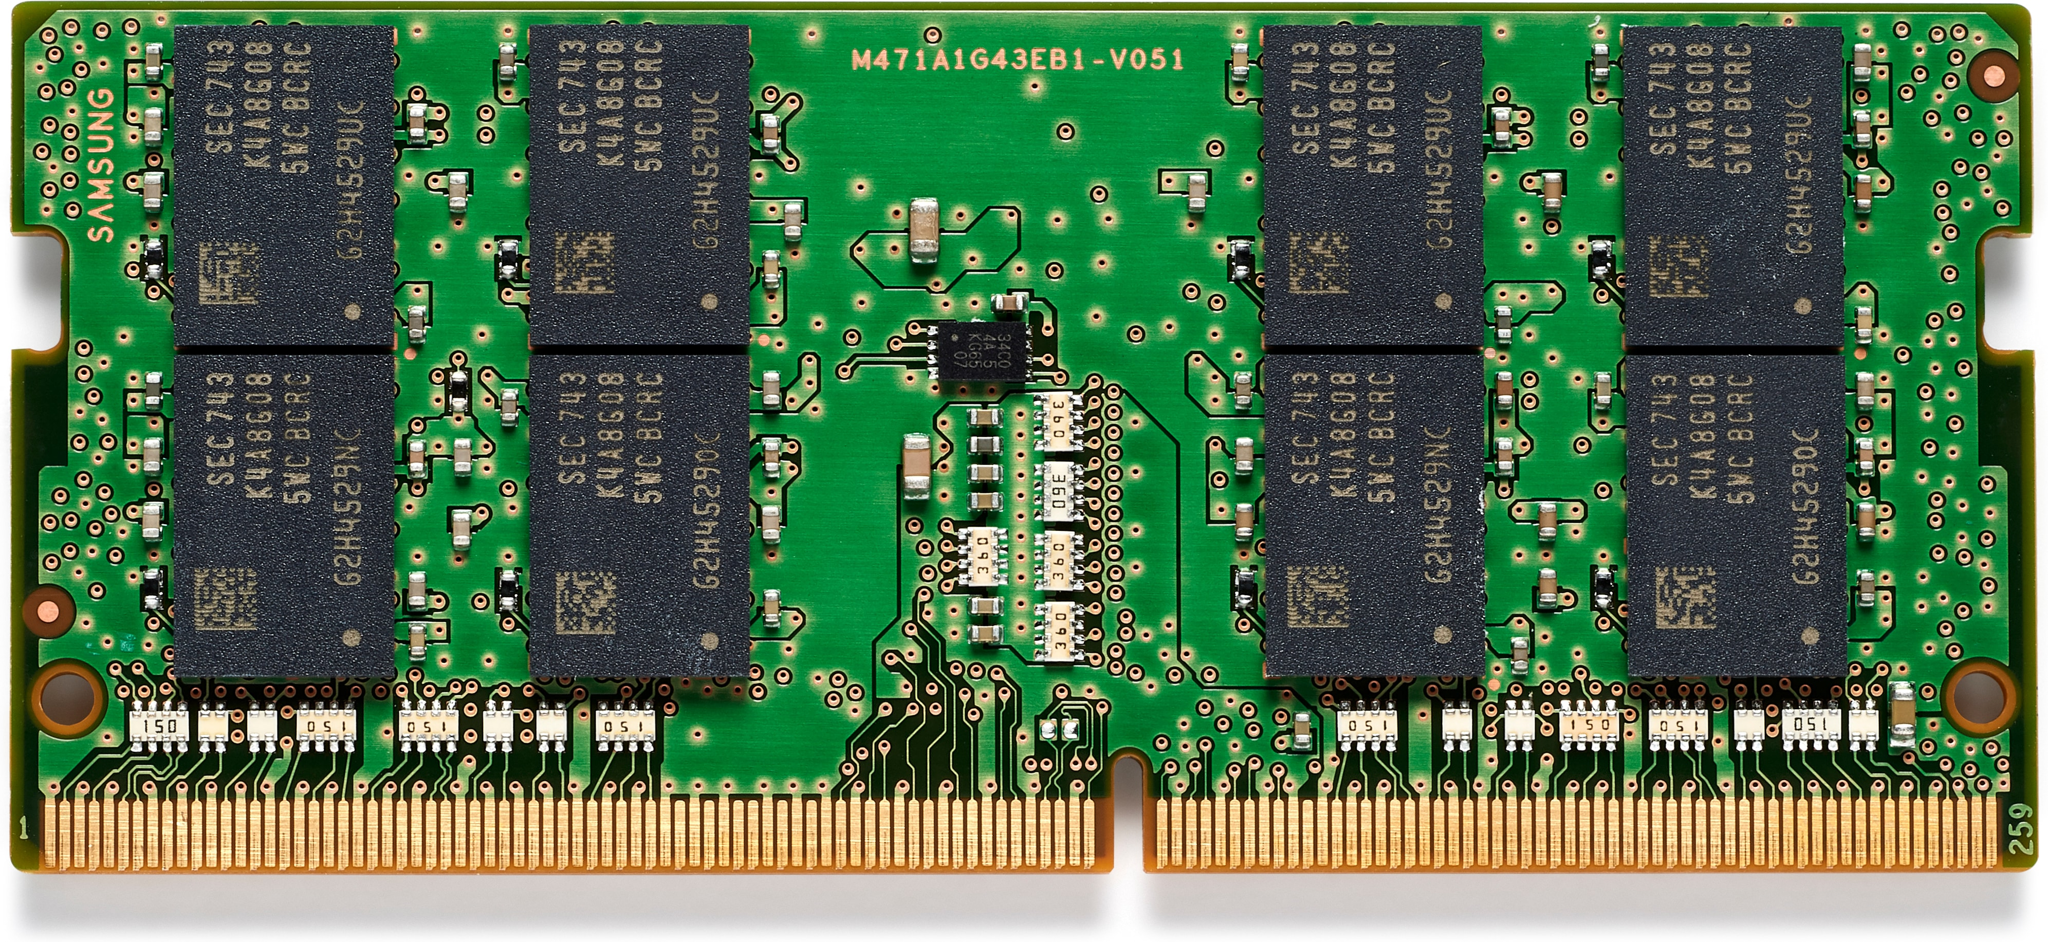 Bild von HP 6FR89AA - 32 GB - 1 x 32 GB - DDR4 - 2666 MHz